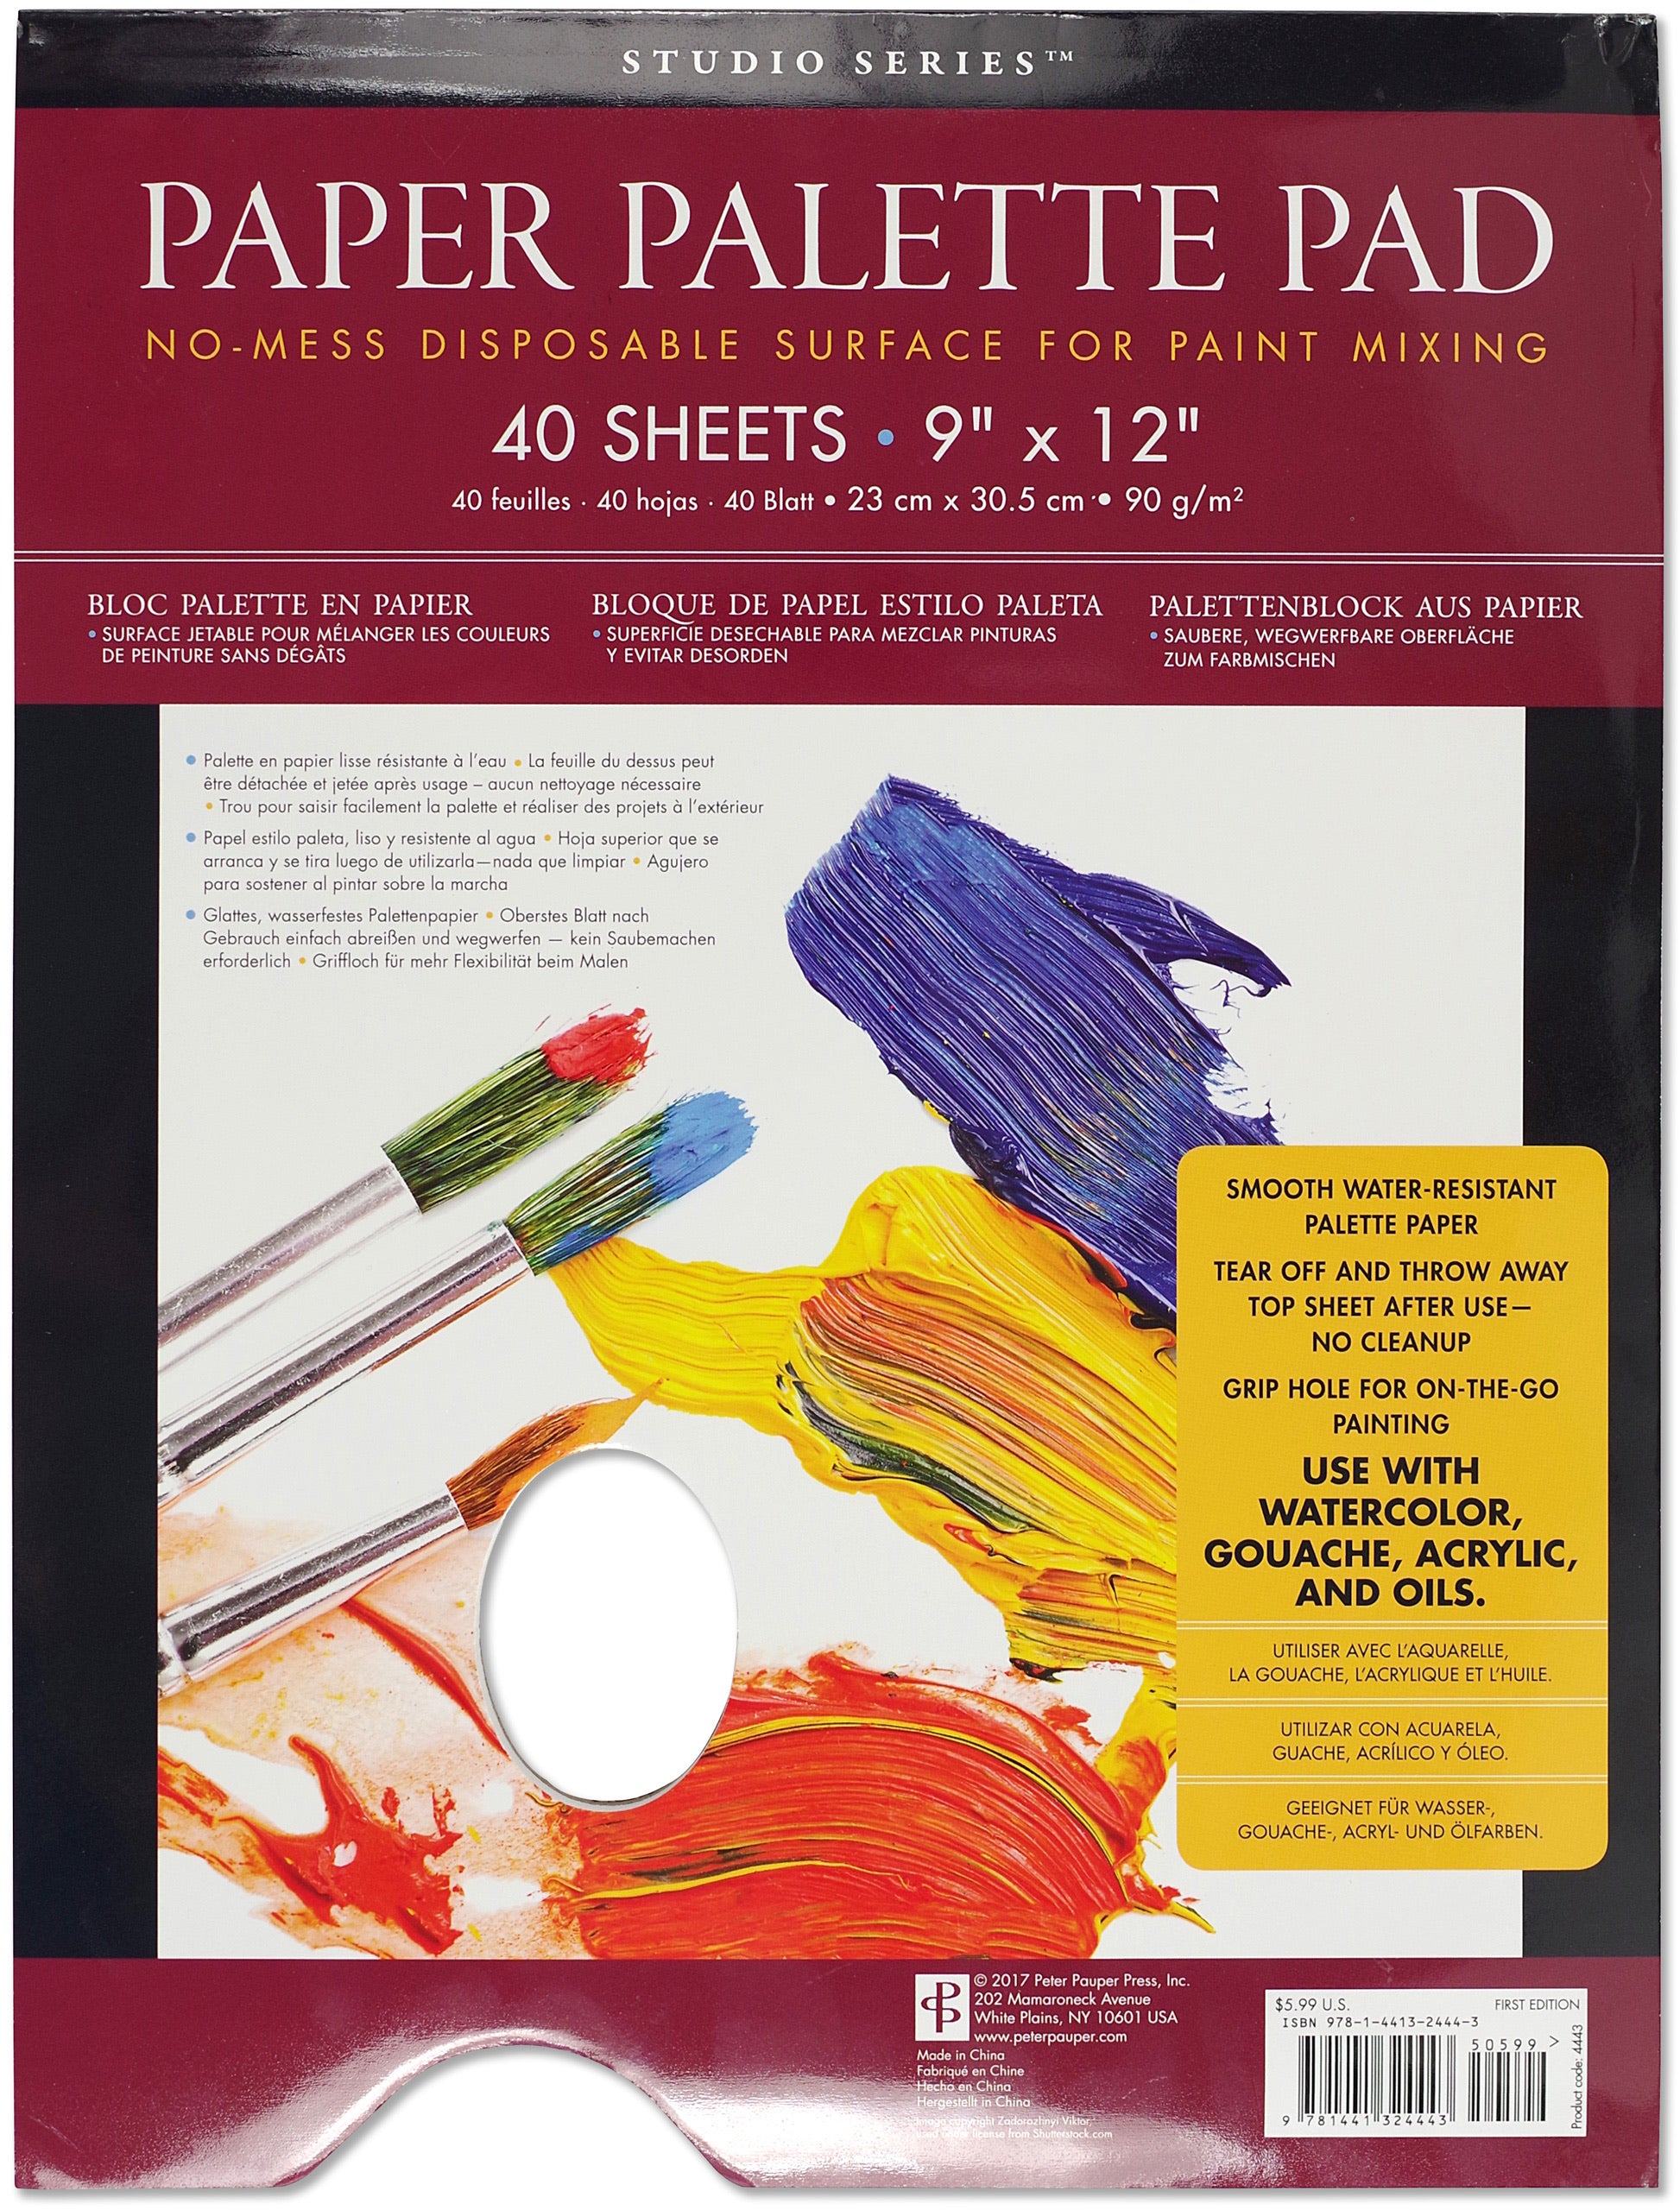 Tear-off Disposable Palette Paper Paint Palettes Pad - China Tear-off Paper,  Disposable Palette